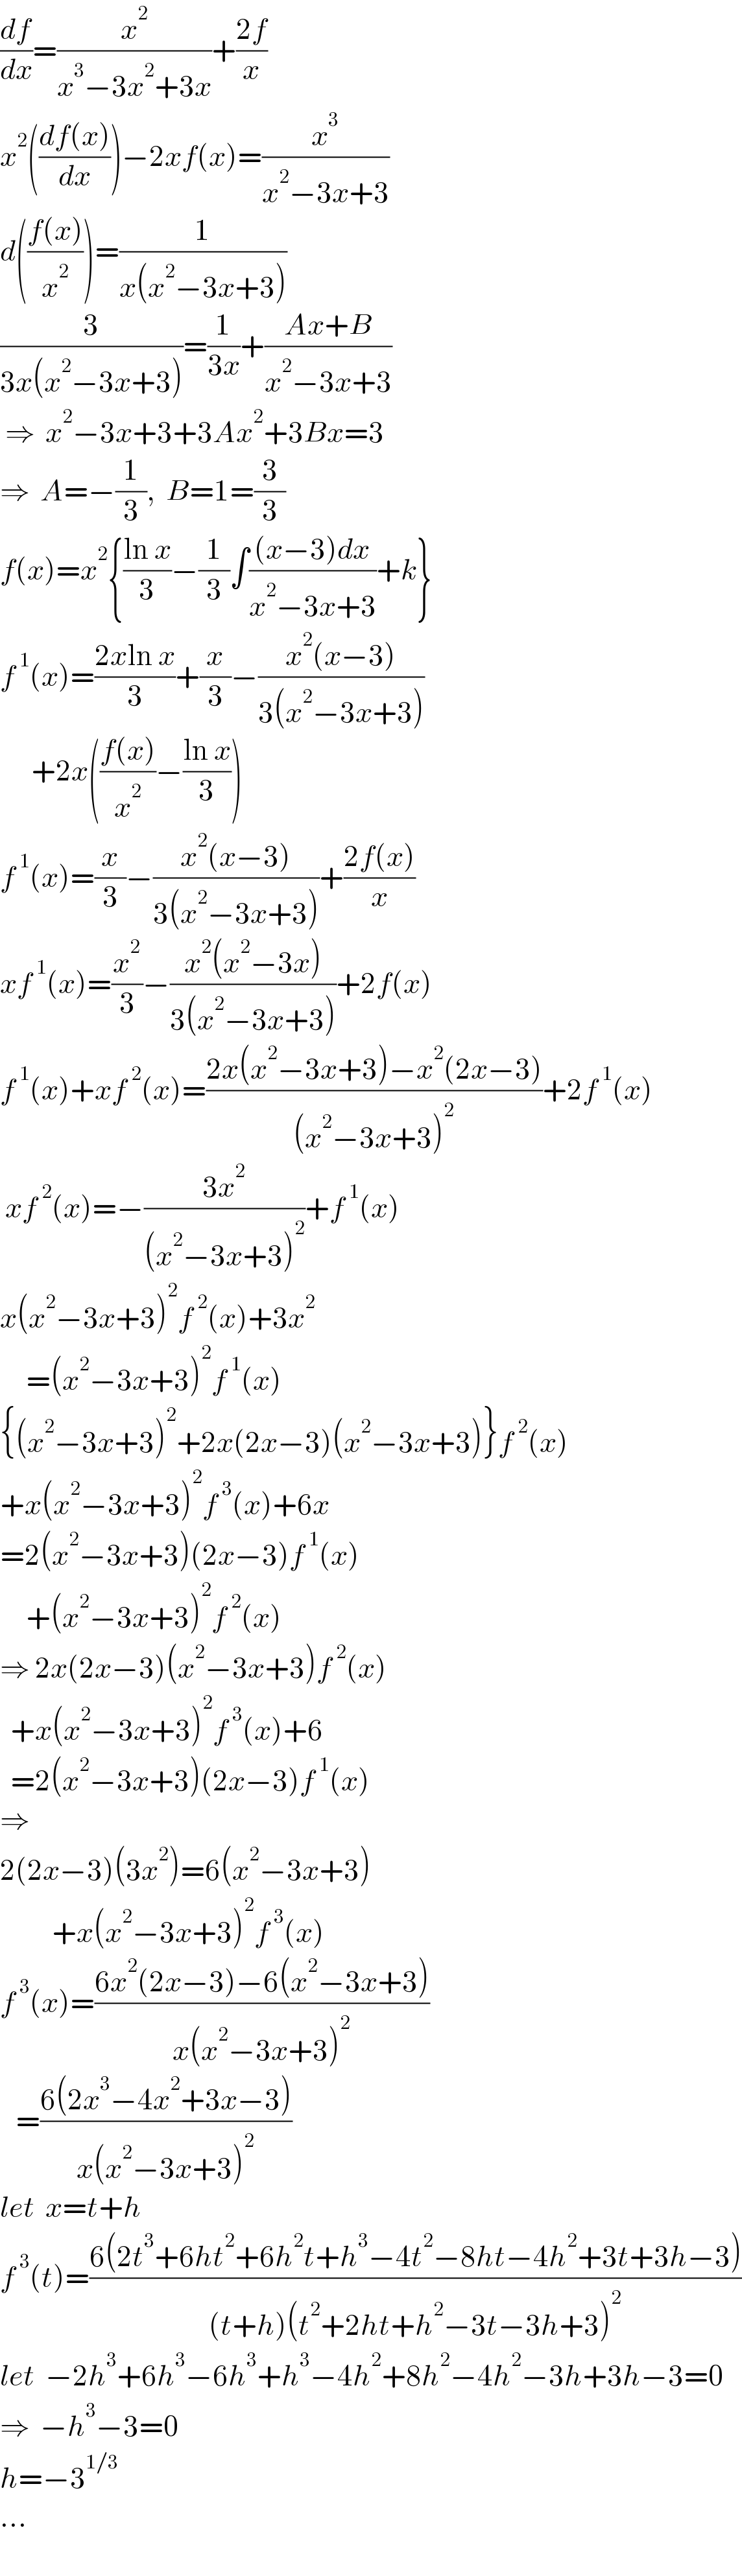 (df/dx)=(x^2 /(x^3 −3x^2 +3x))+((2f)/x)  x^2 (((df(x))/dx))−2xf(x)=(x^3 /(x^2 −3x+3))  d(((f(x))/x^2 ))=(1/(x(x^2 −3x+3)))  (3/(3x(x^2 −3x+3)))=(1/(3x))+((Ax+B)/(x^2 −3x+3))   ⇒  x^2 −3x+3+3Ax^2 +3Bx=3  ⇒  A=−(1/3),  B=1=(3/3)  f(x)=x^2 {((ln x)/3)−(1/3)∫(((x−3)dx)/(x^2 −3x+3))+k}  f^( 1) (x)=((2xln x)/3)+(x/3)−((x^2 (x−3))/(3(x^2 −3x+3)))        +2x(((f(x))/x^2 )−((ln x)/3))  f^( 1) (x)=(x/3)−((x^2 (x−3))/(3(x^2 −3x+3)))+((2f(x))/x)  xf^( 1) (x)=(x^2 /3)−((x^2 (x^2 −3x))/(3(x^2 −3x+3)))+2f(x)  f^( 1) (x)+xf^( 2) (x)=((2x(x^2 −3x+3)−x^2 (2x−3))/((x^2 −3x+3)^2 ))+2f^( 1) (x)   xf^( 2) (x)=−((3x^2 )/((x^2 −3x+3)^2 ))+f^( 1) (x)  x(x^2 −3x+3)^2 f^( 2) (x)+3x^2        =(x^2 −3x+3)^2 f^( 1) (x)  {(x^2 −3x+3)^2 +2x(2x−3)(x^2 −3x+3)}f^( 2) (x)  +x(x^2 −3x+3)^2 f^( 3) (x)+6x  =2(x^2 −3x+3)(2x−3)f^( 1) (x)       +(x^2 −3x+3)^2 f^( 2) (x)  ⇒ 2x(2x−3)(x^2 −3x+3)f^( 2) (x)    +x(x^2 −3x+3)^2 f^( 3) (x)+6    =2(x^2 −3x+3)(2x−3)f^( 1) (x)  ⇒  2(2x−3)(3x^2 )=6(x^2 −3x+3)            +x(x^2 −3x+3)^2 f^( 3) (x)  f^( 3) (x)=((6x^2 (2x−3)−6(x^2 −3x+3))/(x(x^2 −3x+3)^2 ))     =((6(2x^3 −4x^2 +3x−3))/(x(x^2 −3x+3)^2 ))  let  x=t+h  f^( 3) (t)=((6(2t^3 +6ht^2 +6h^2 t+h^3 −4t^2 −8ht−4h^2 +3t+3h−3))/((t+h)(t^2 +2ht+h^2 −3t−3h+3)^2 ))  let  −2h^3 +6h^3 −6h^3 +h^3 −4h^2 +8h^2 −4h^2 −3h+3h−3=0  ⇒  −h^3 −3=0  h=−3^(1/3)   ...    